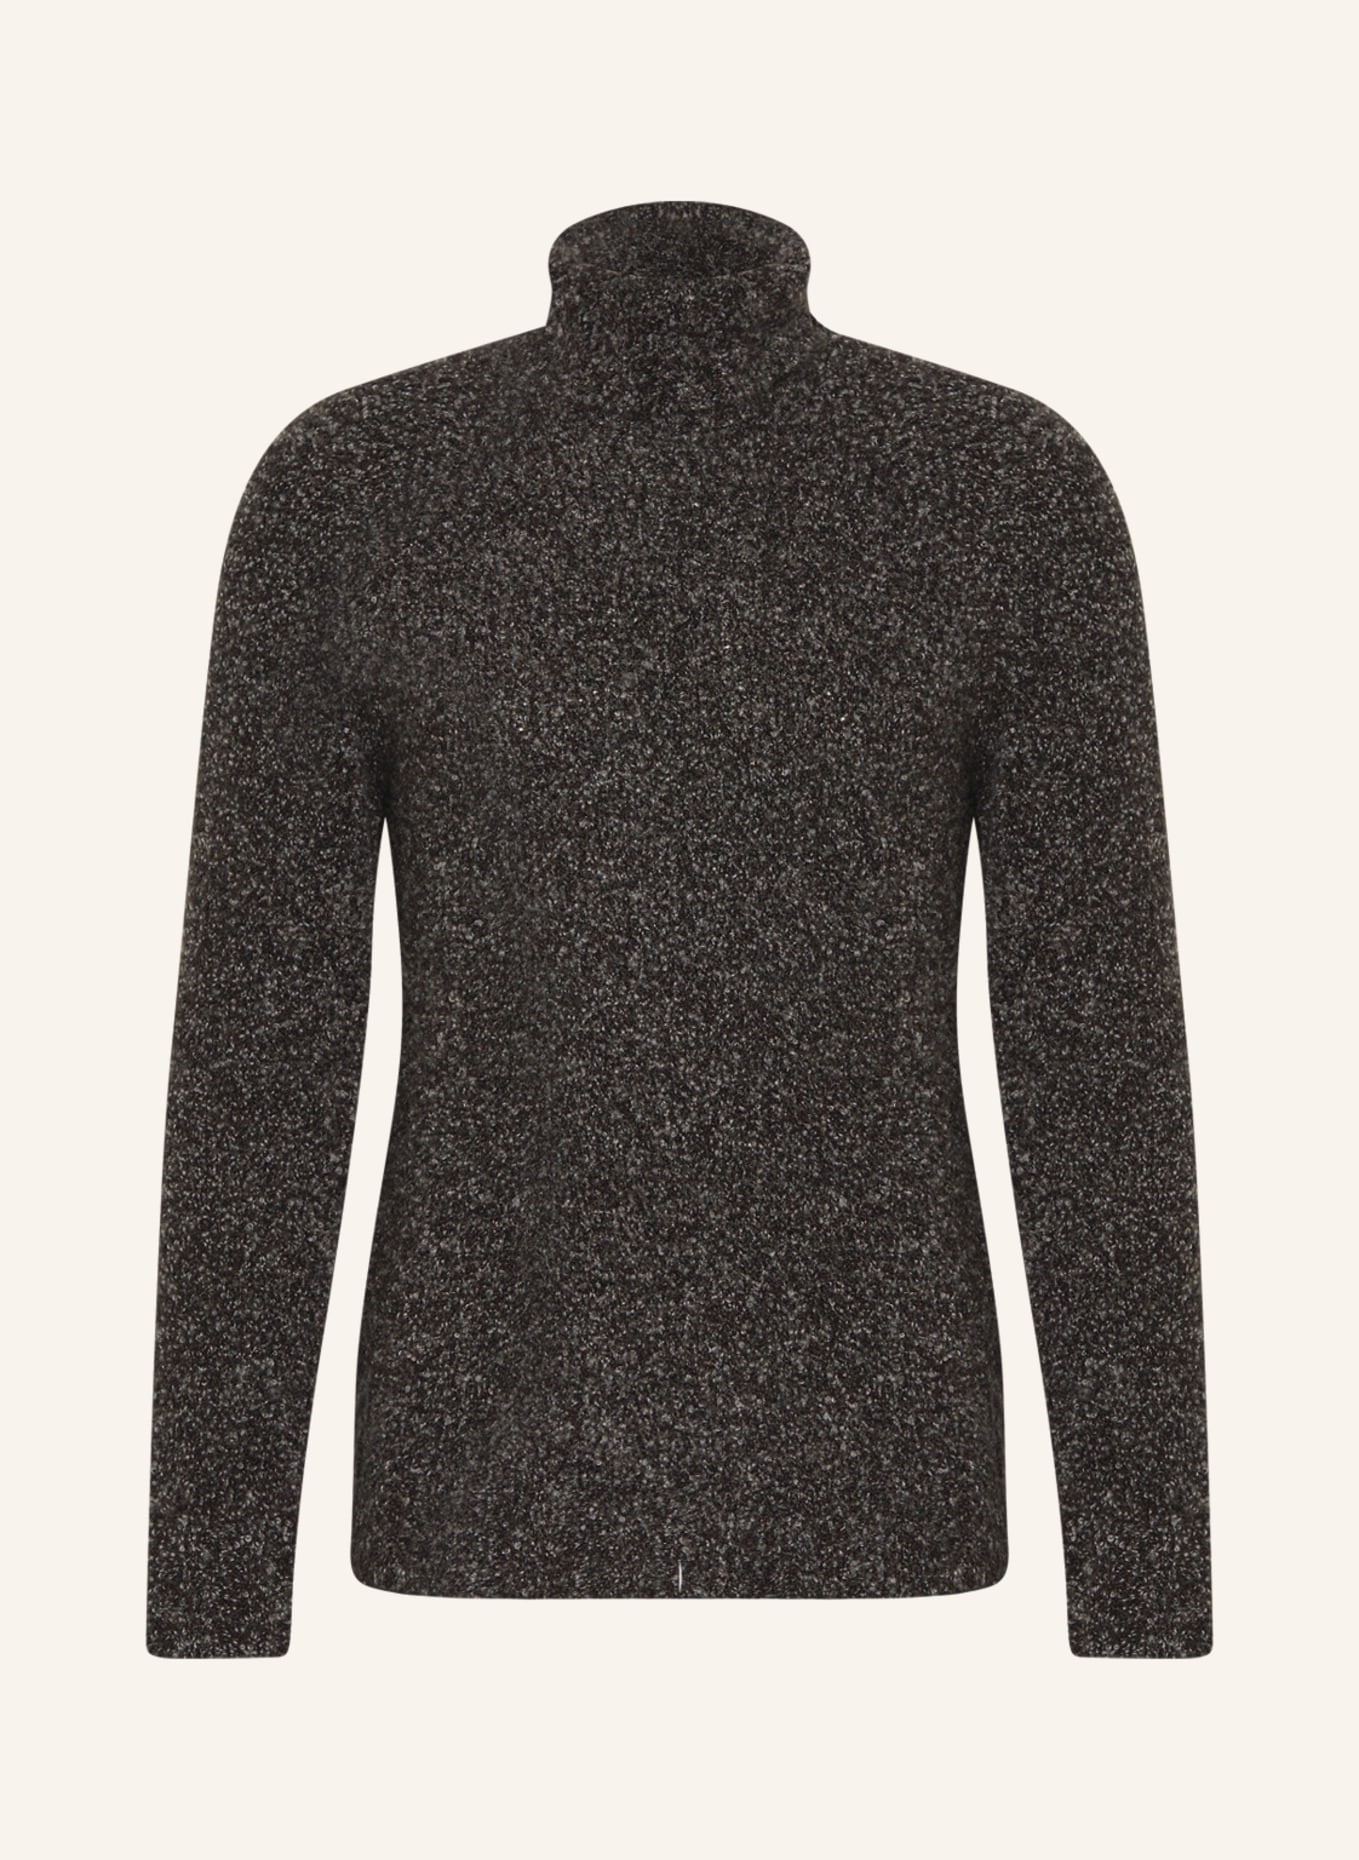 GIORGIO ARMANI Turtleneck sweater in cashmere, Color: BLACK/ WHITE (Image 1)